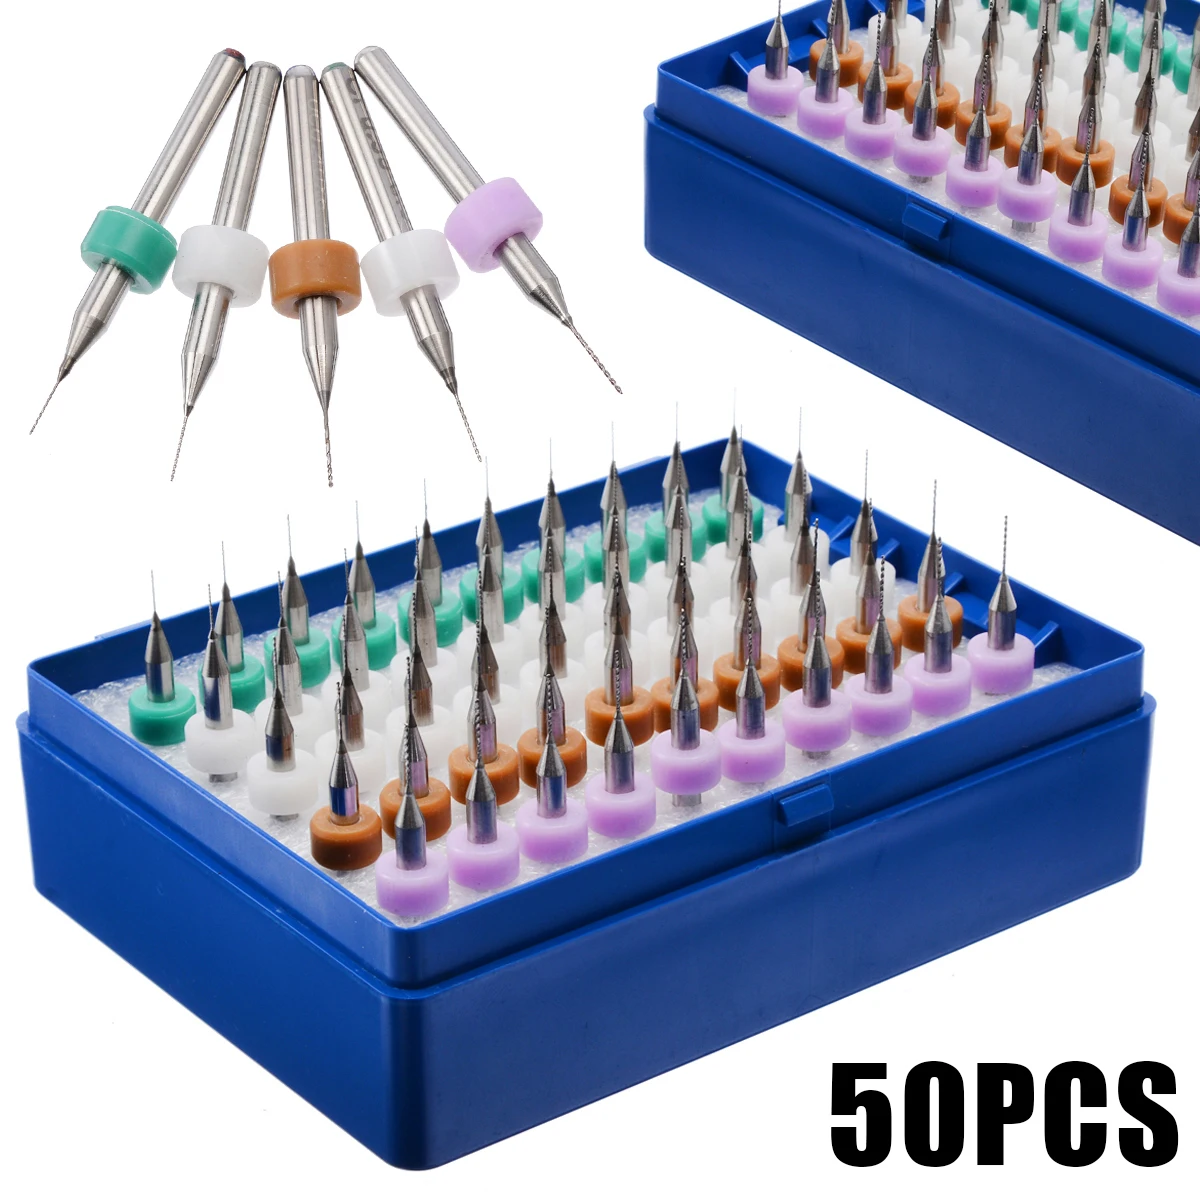 50pcs 0.25-0.45mm Tungsten Carbide Micro PCB Drill Bits Set for PCB Circuit Boar 